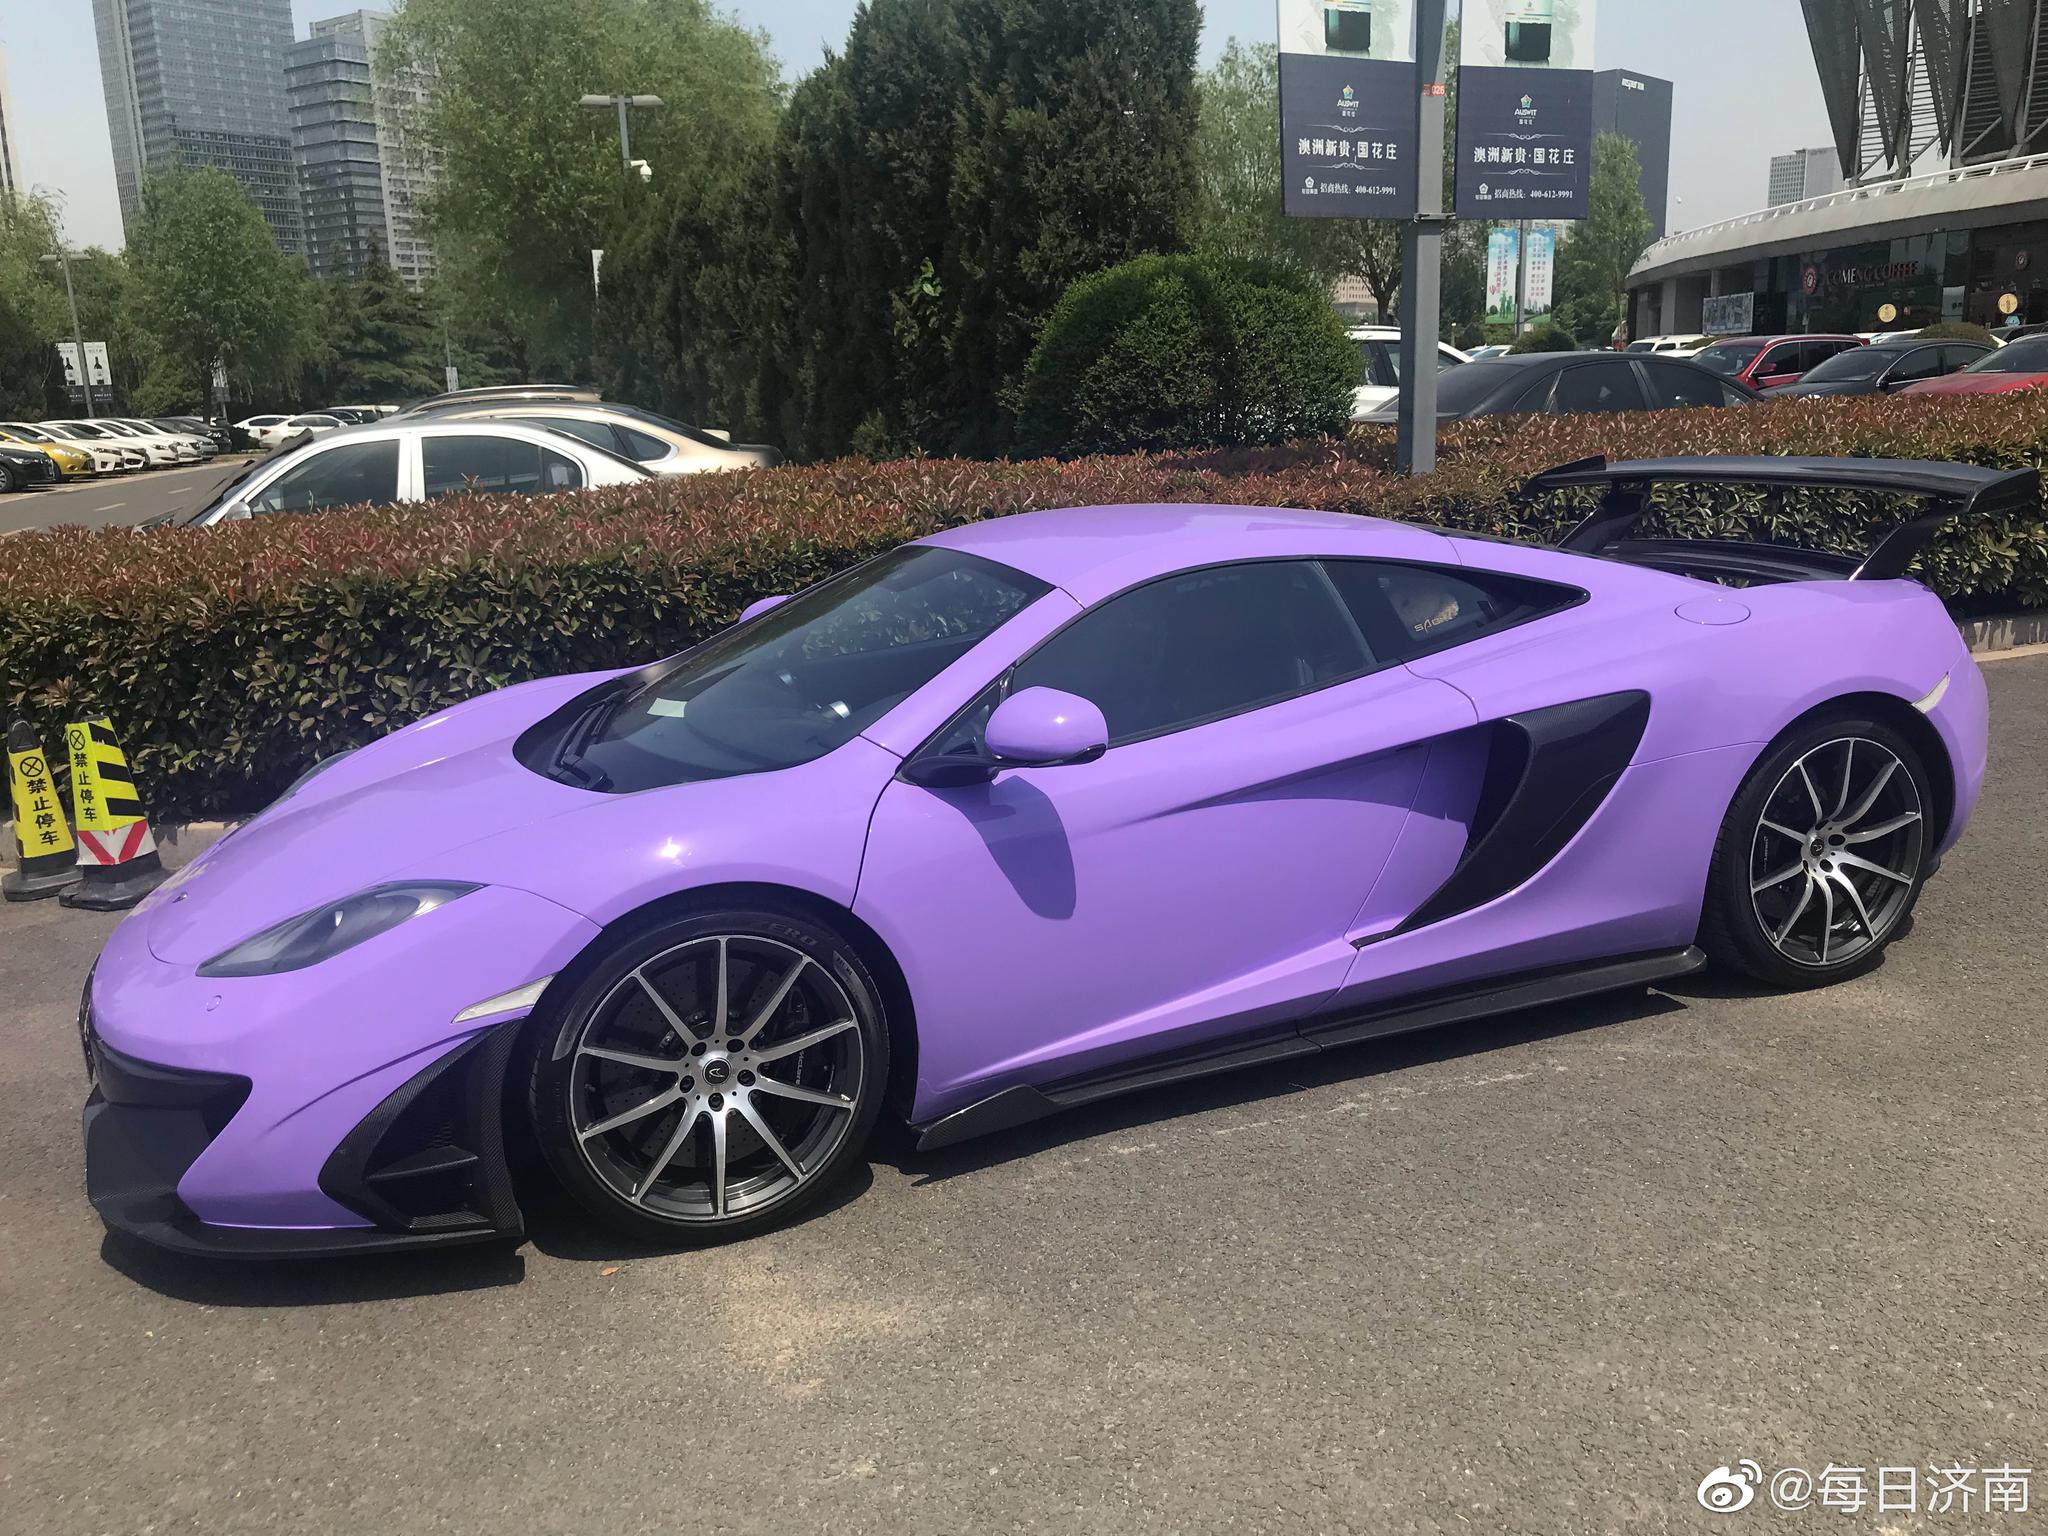 中午看见一辆紫色的车～真骚气呀～这啥牌子?